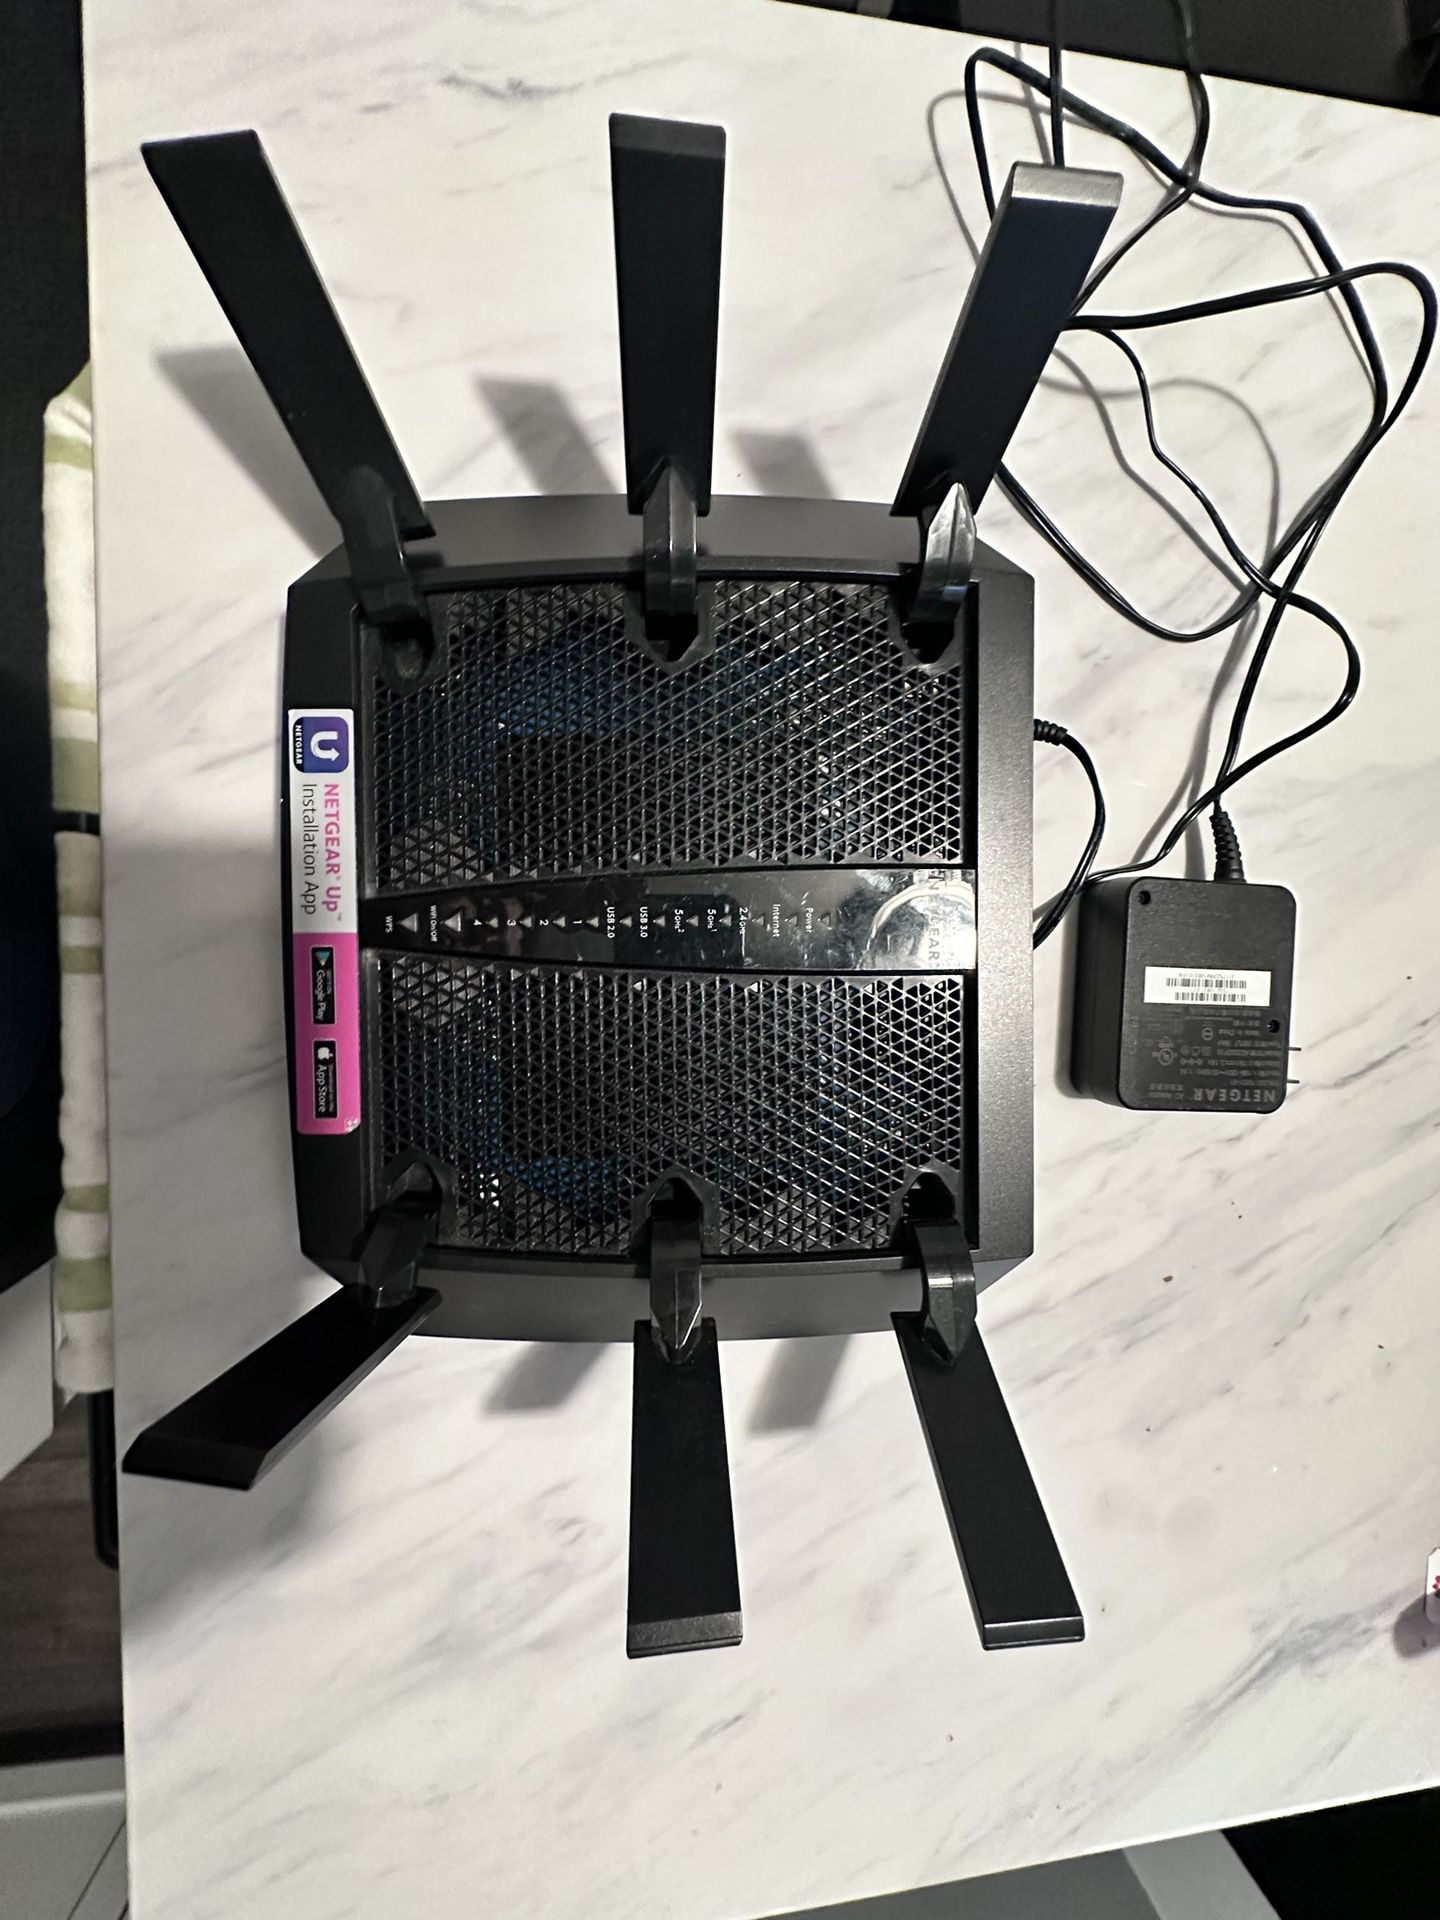 Netgear Nighthawk x6 AC3200 Tri-band wifi router R8000